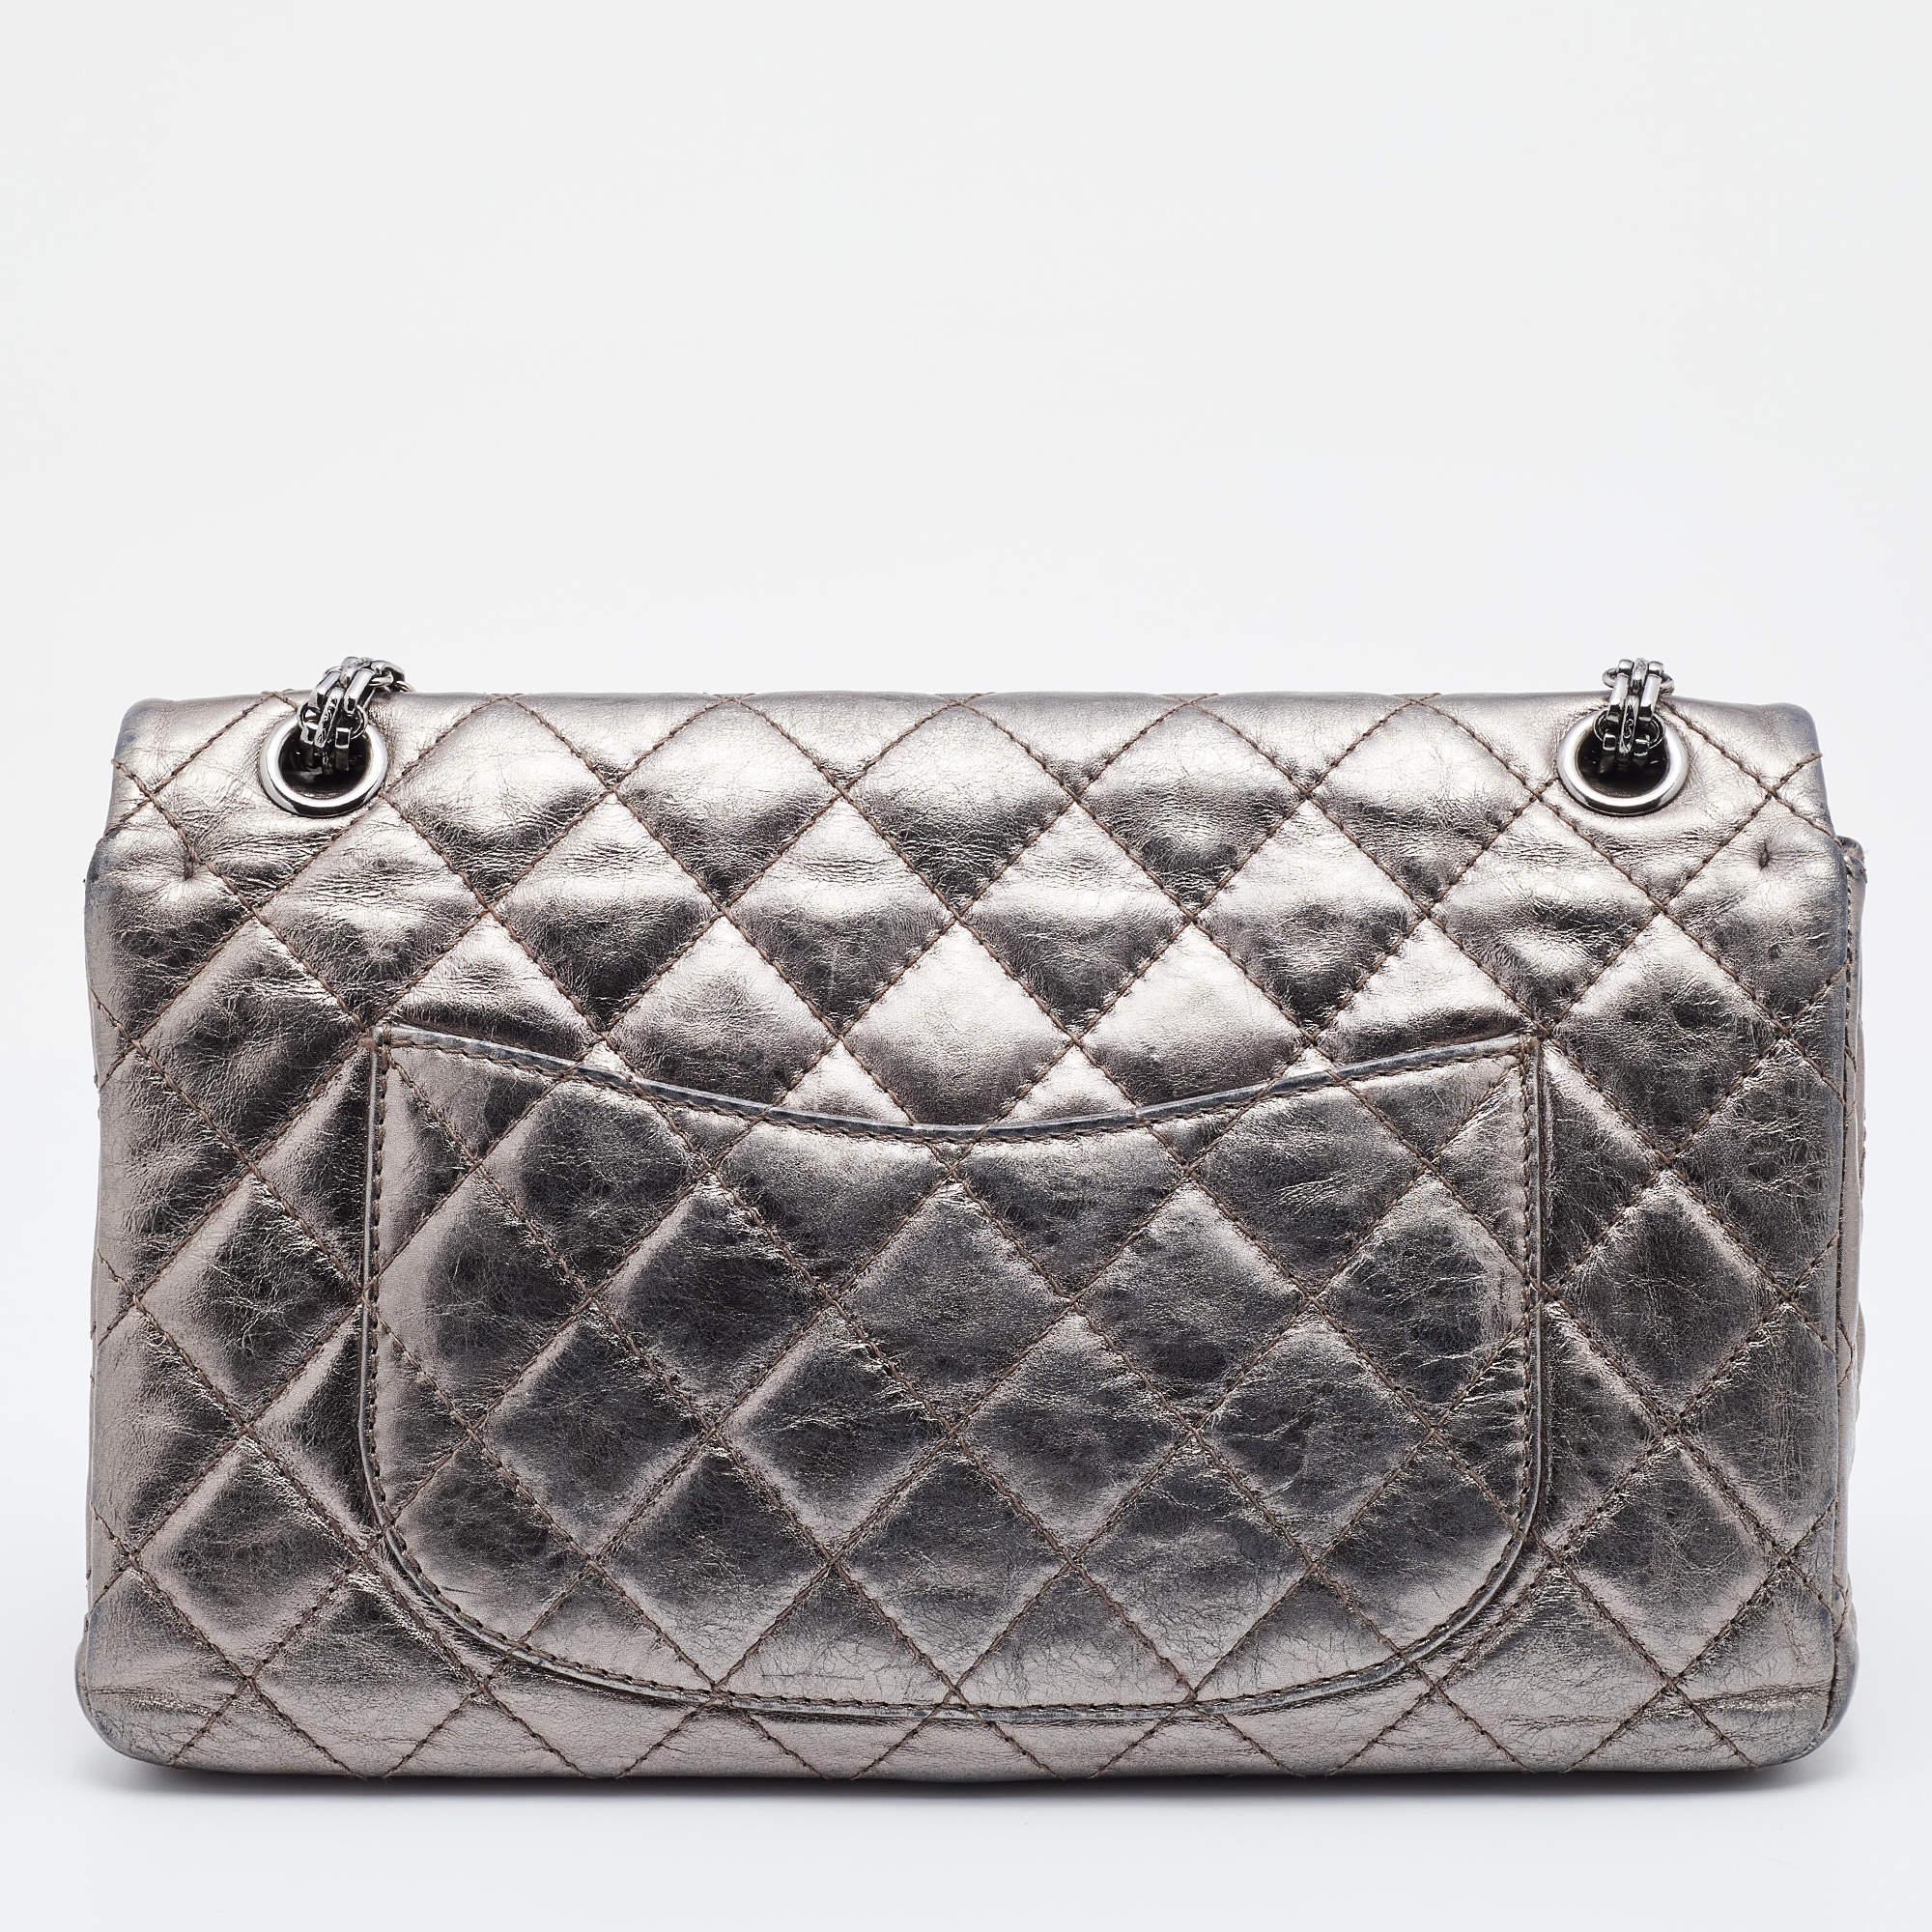 Les sacs à rabat de Chanel sont emblématiques et remarquables dans l'histoire de la mode. Par conséquent, cette Reissue 2.55 Classic 226 est un achat qui vaut la peine d'être fait. Confectionné en cuir gris métallisé, il arbore le motif matelassé